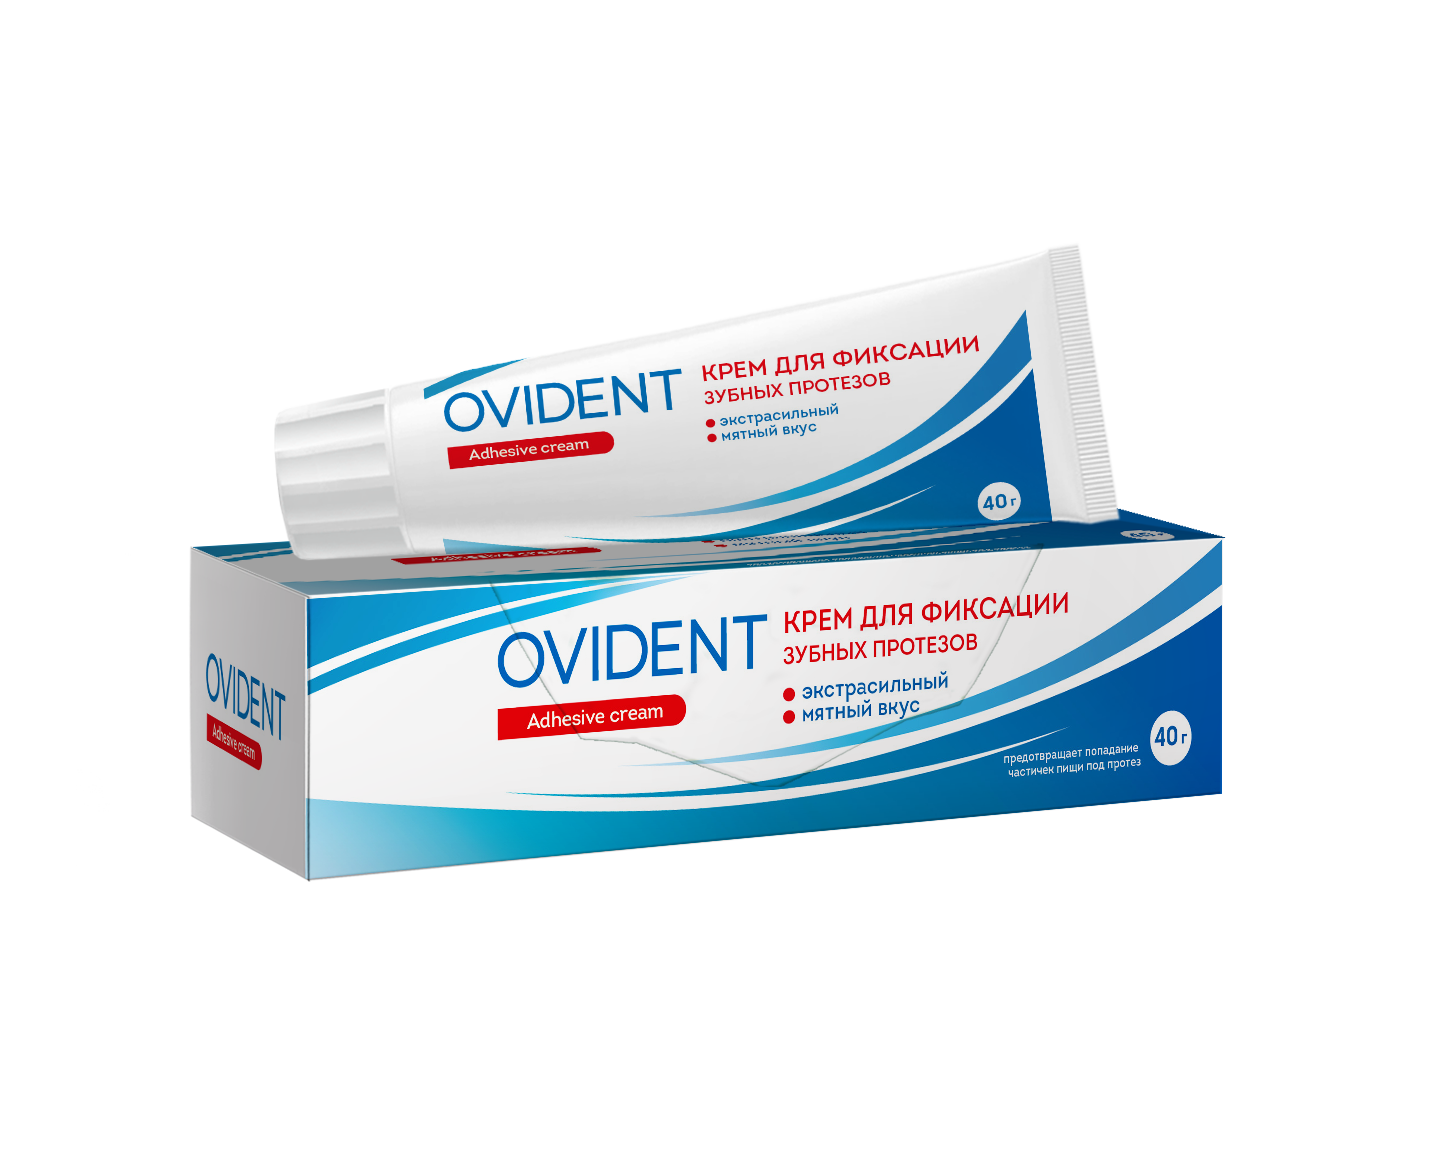 OVIDENT, Крем для фиксации зубных протезов Экстрасильный, 40 мг крем для фиксации зубных протезов до 12 часов мятный освежающий вкус corega корега 40г